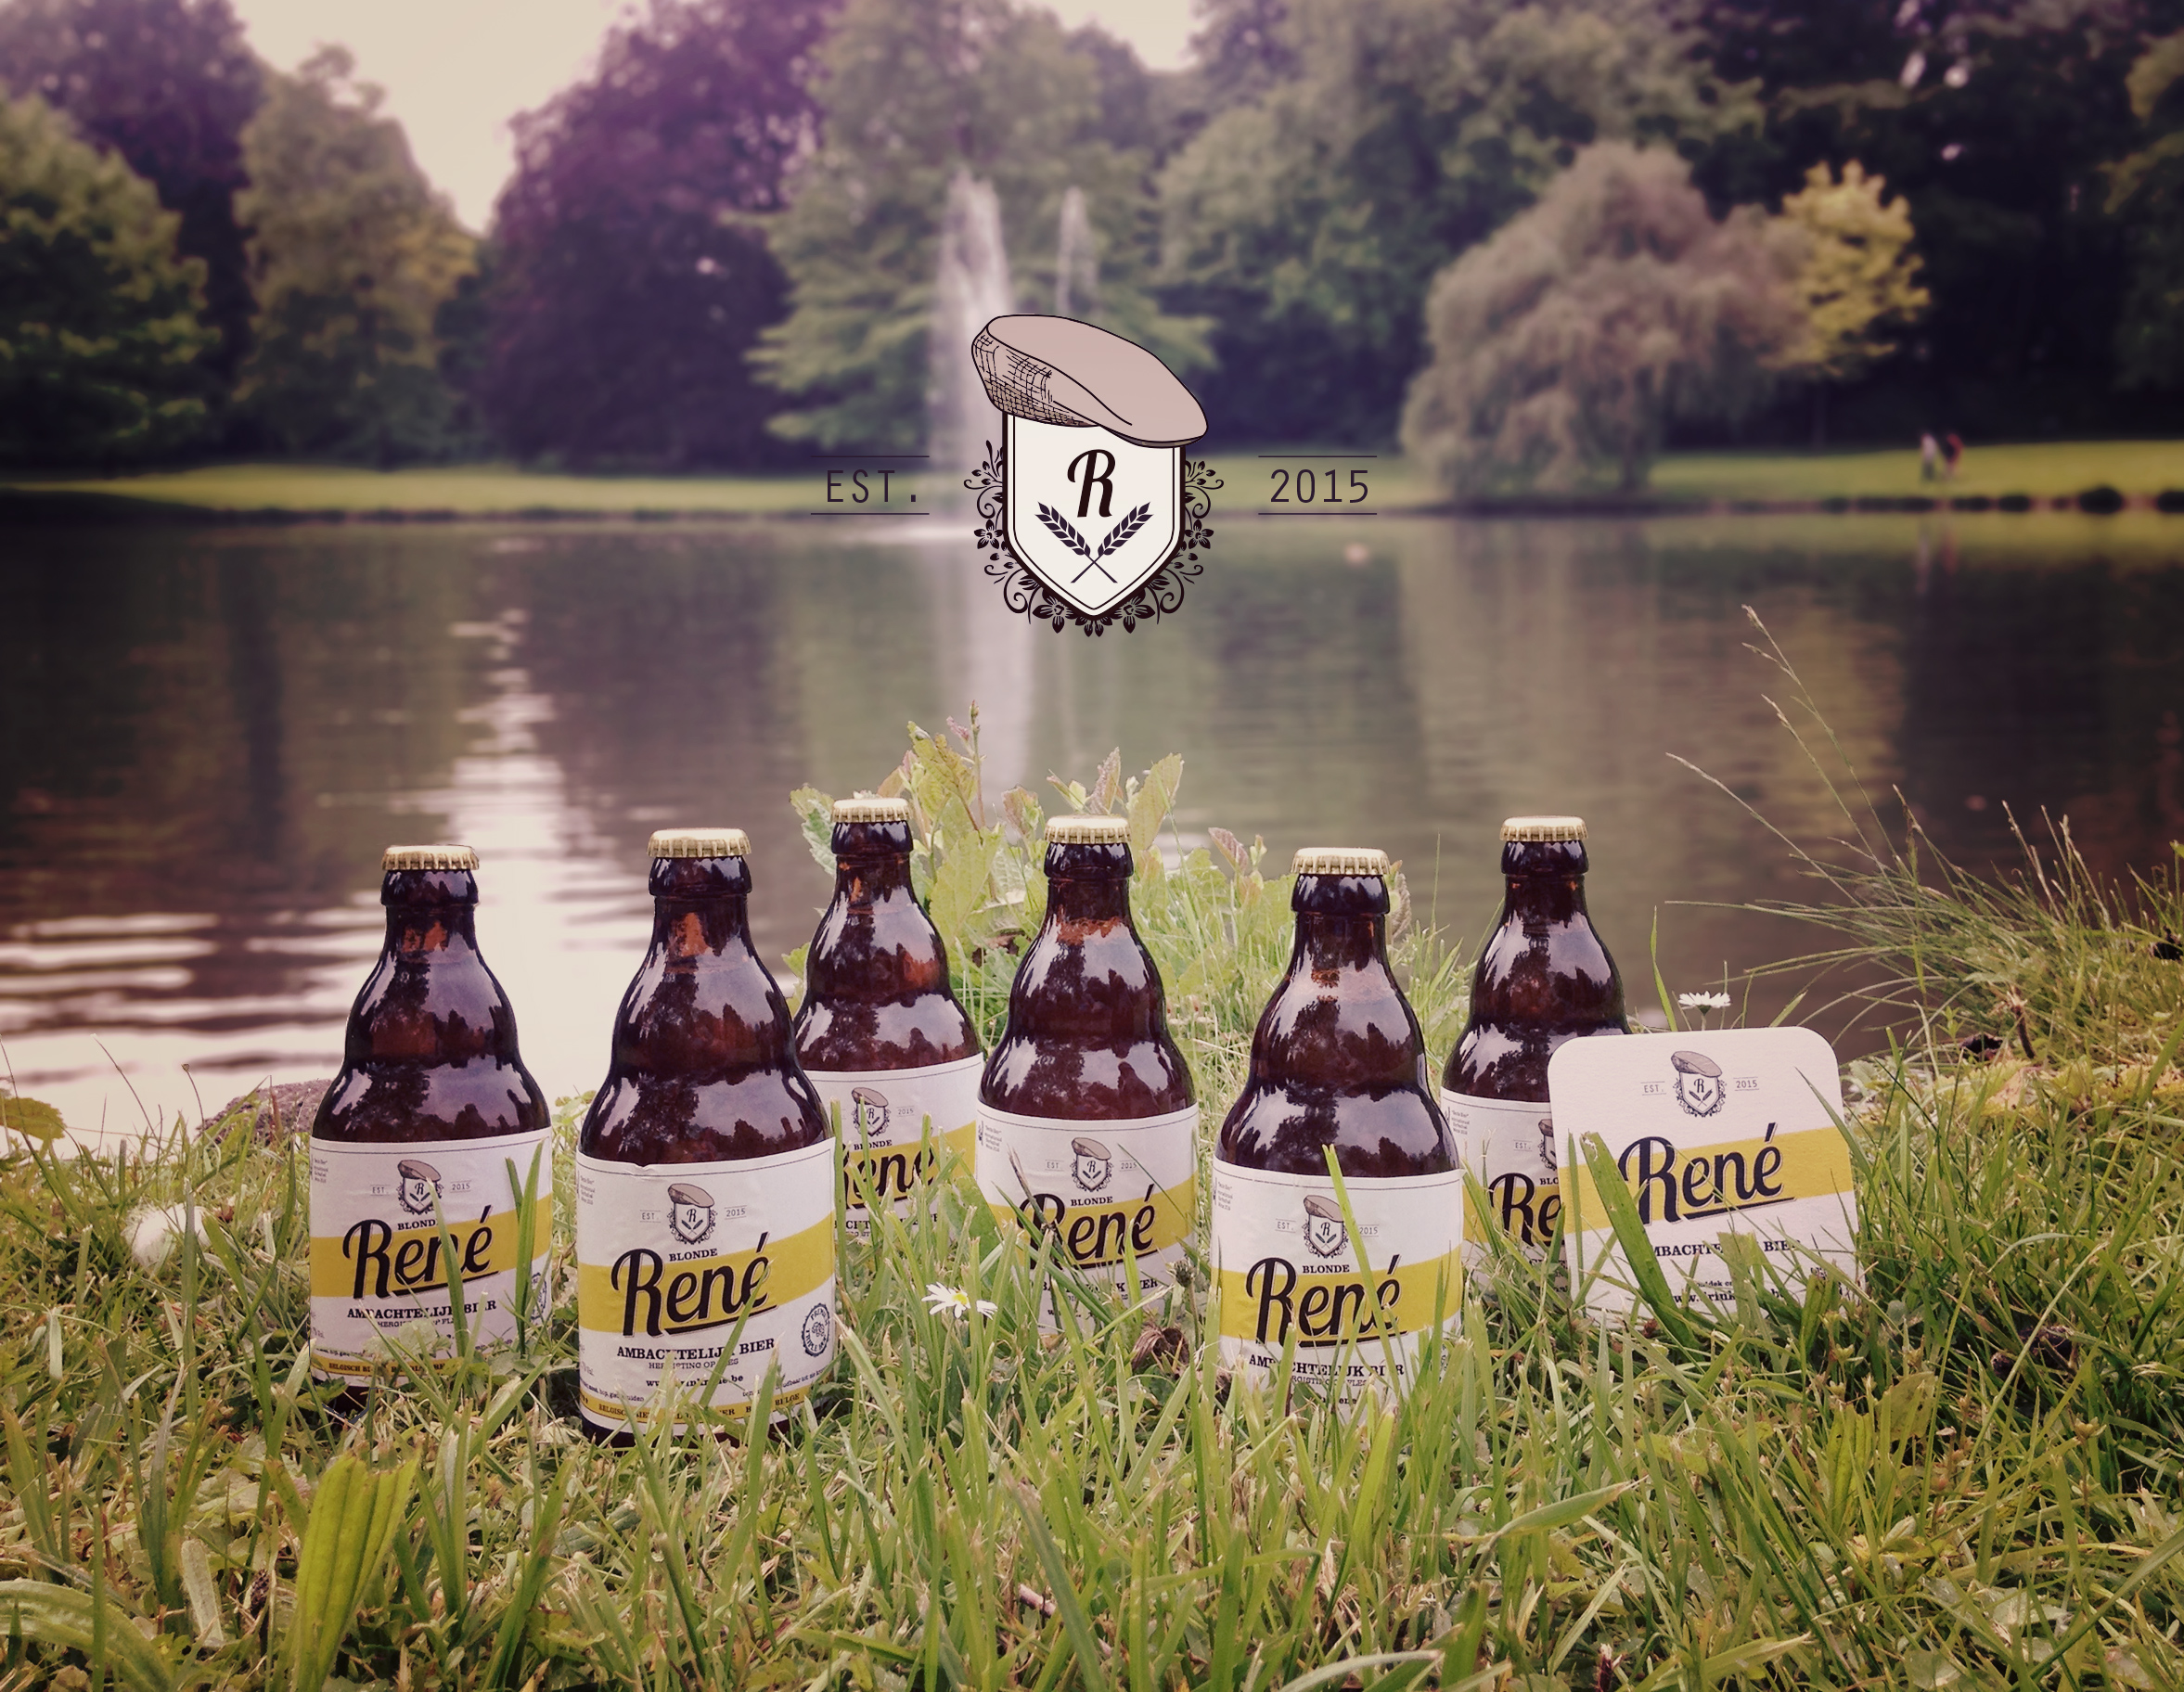 GEPROEFD: René, ambachtelijk blond bier uit Wichelen